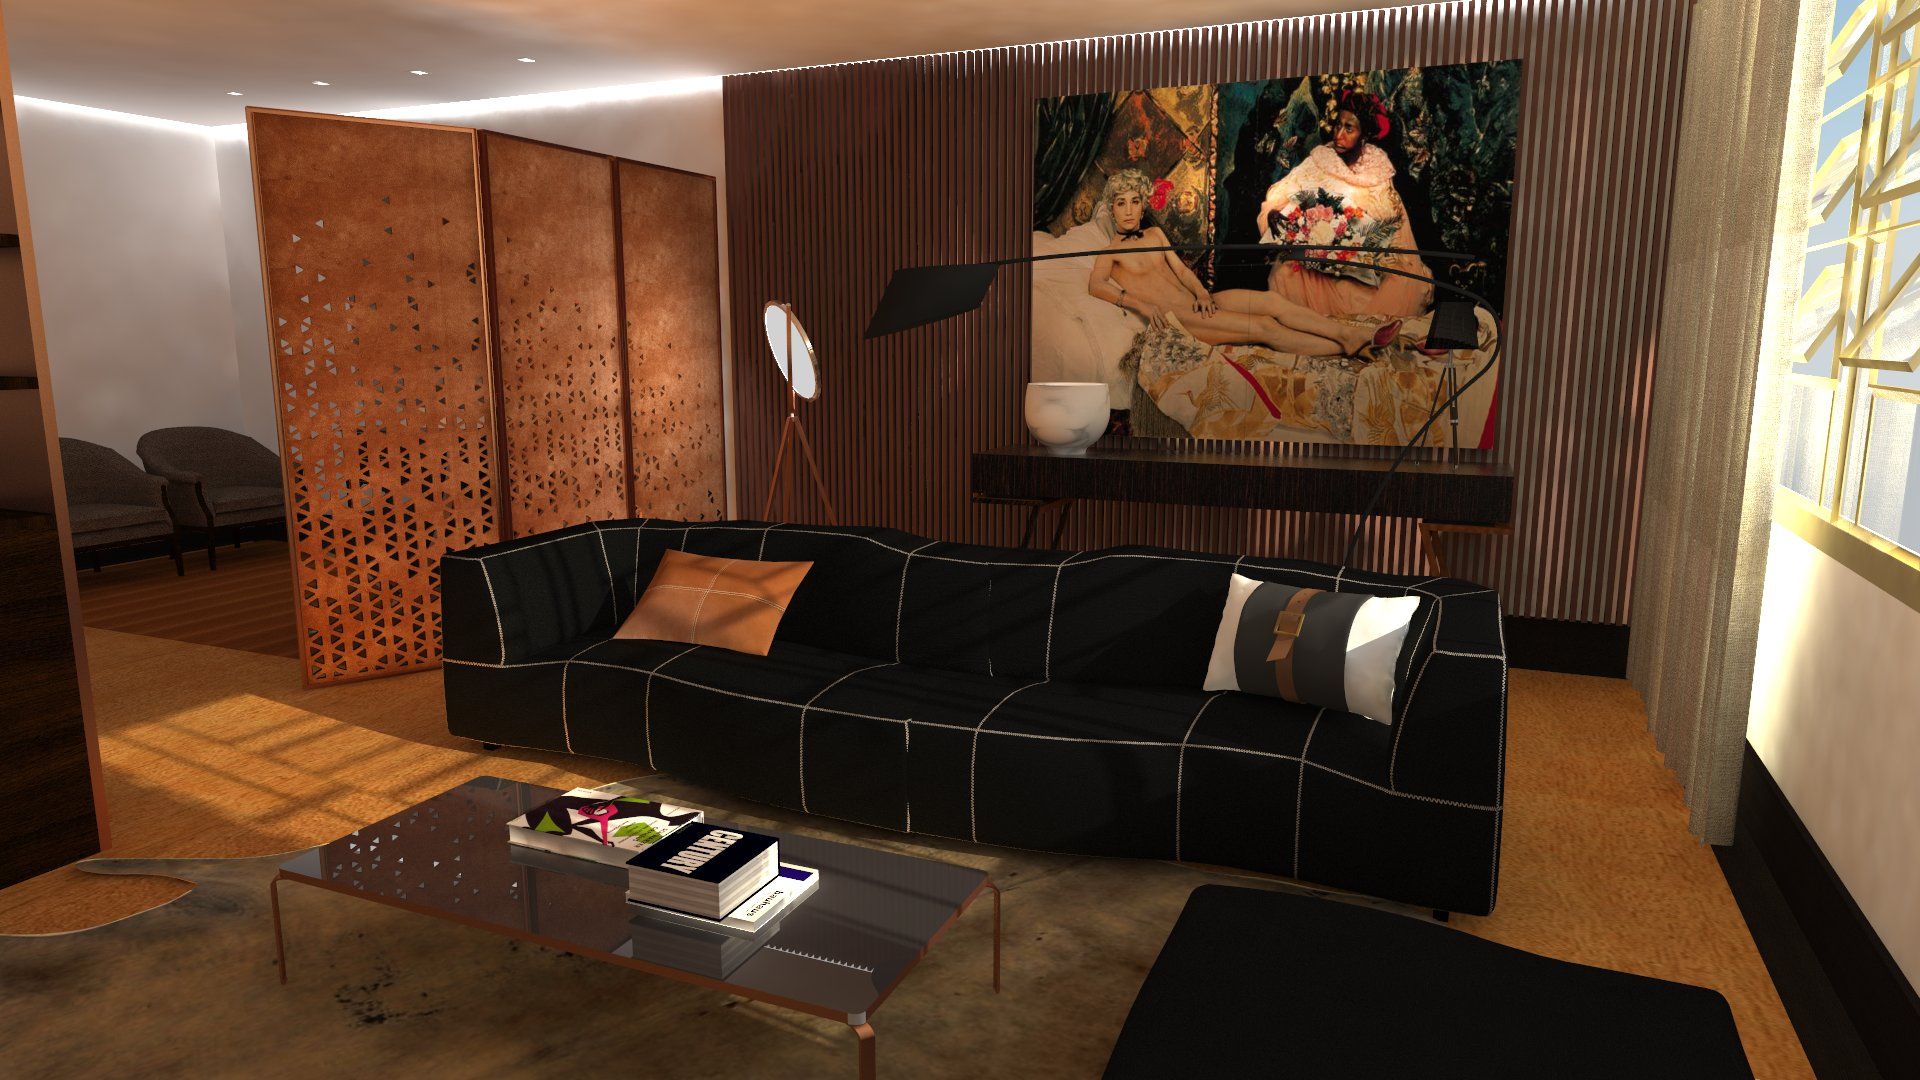 Residence| interior design living room by Paula Gouveia Salas / recibidores